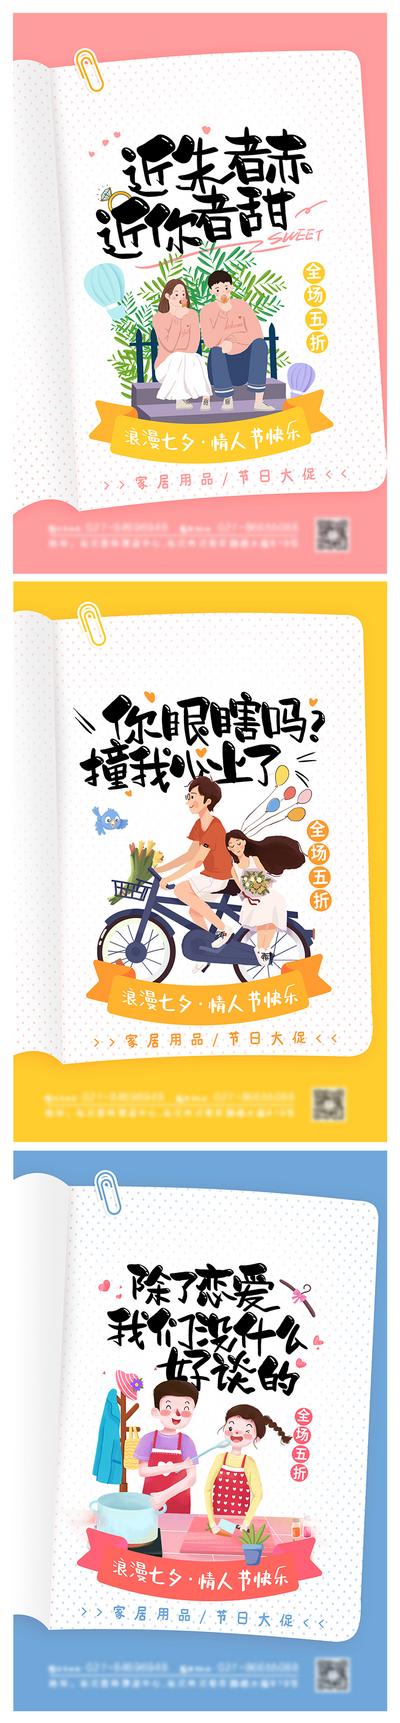 南门网 海报 中国传统节日 七夕 插画 促销 活动